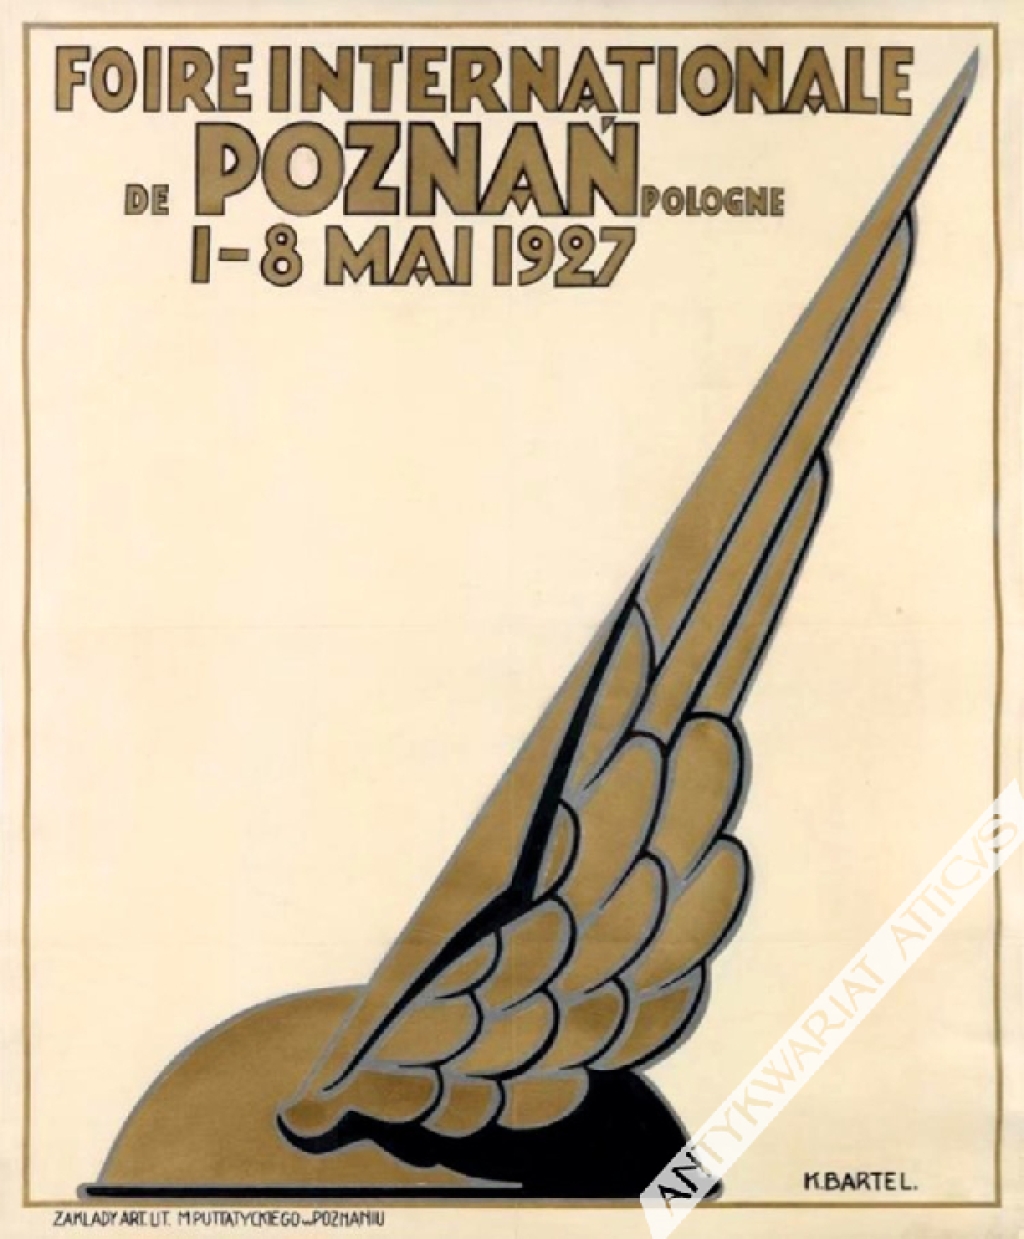 [plakat, 1927] Foire Internationale de Poznań Pologne 1-8 Mai 1927 [Międzynarodowe Targi Poznańskie]